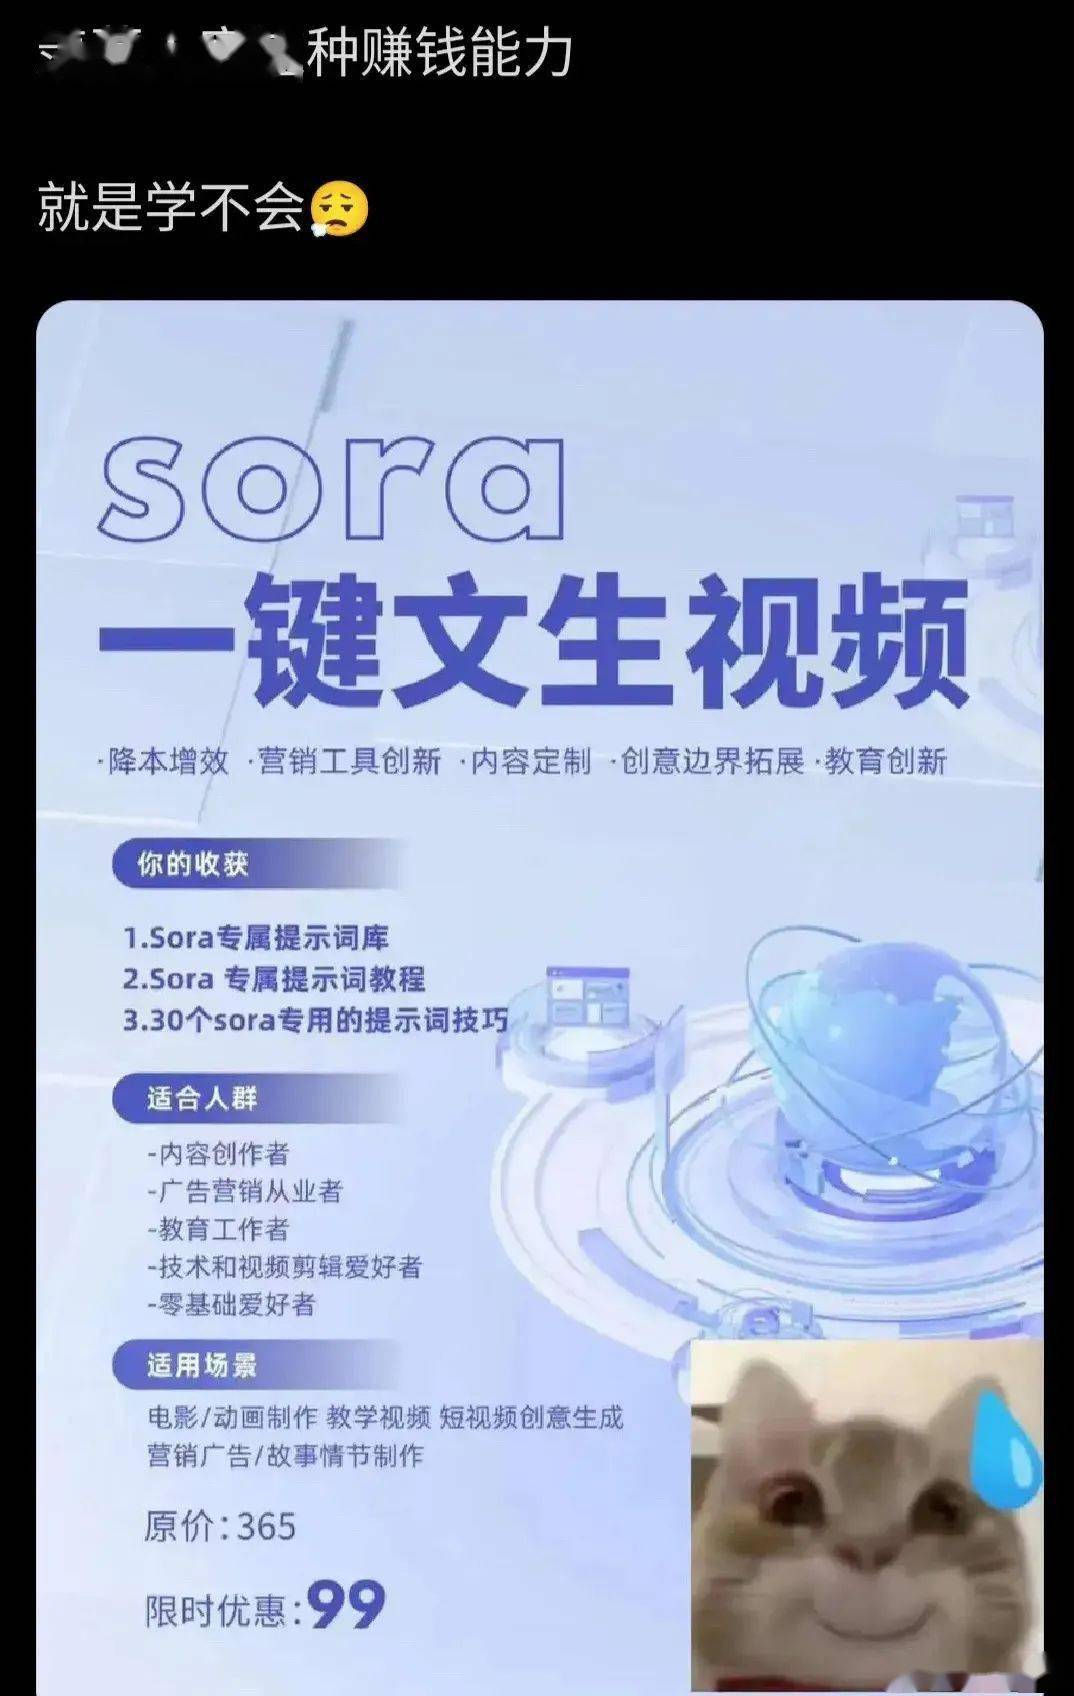 Sora的尽头是卖课_手机搜狐网